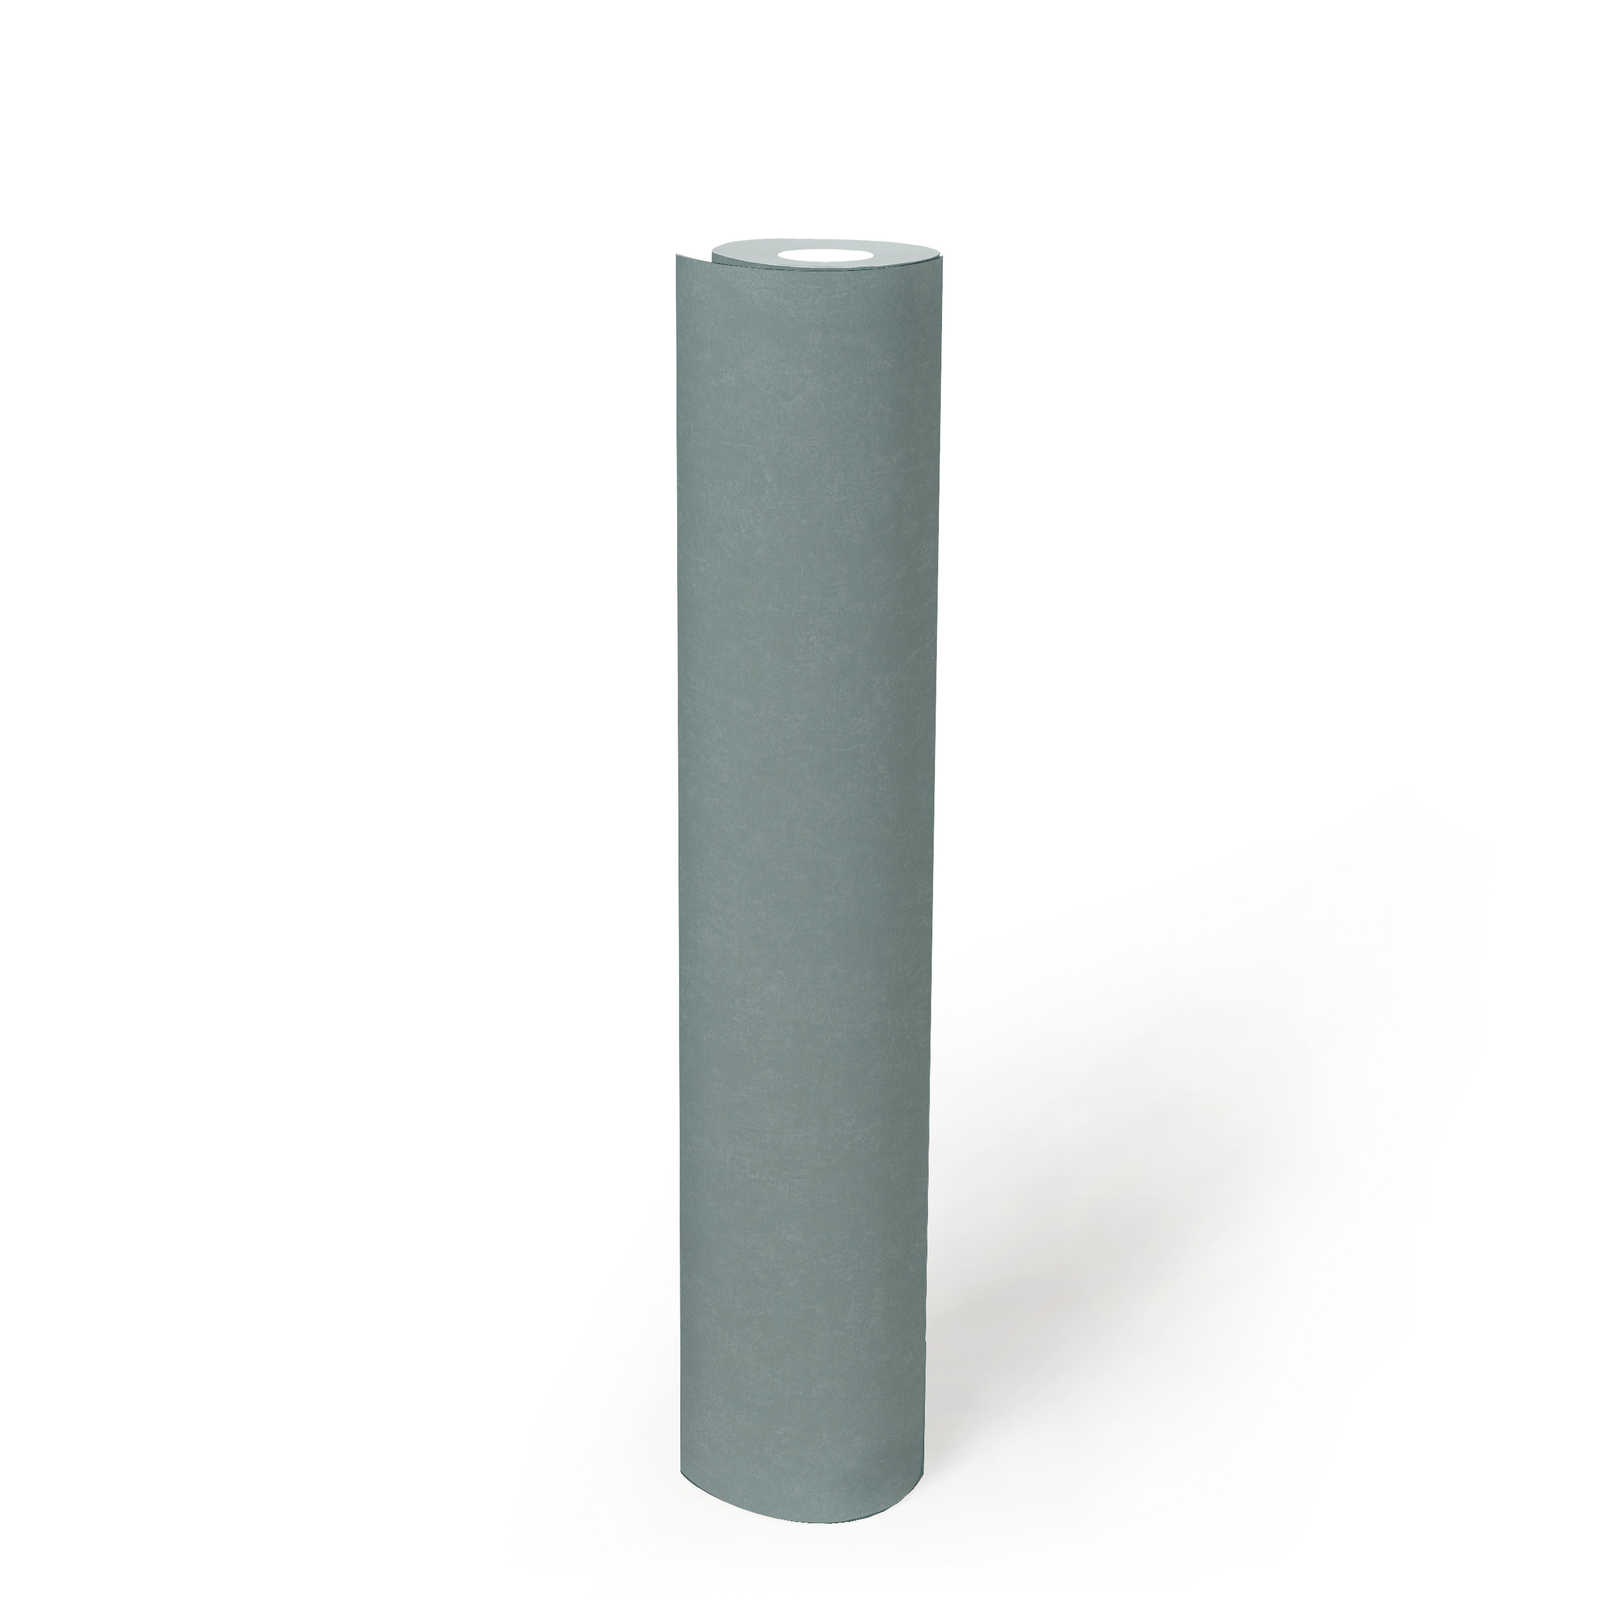             Einfarbige Tapete Blassgrün mit Strukturdesign – Blau
        